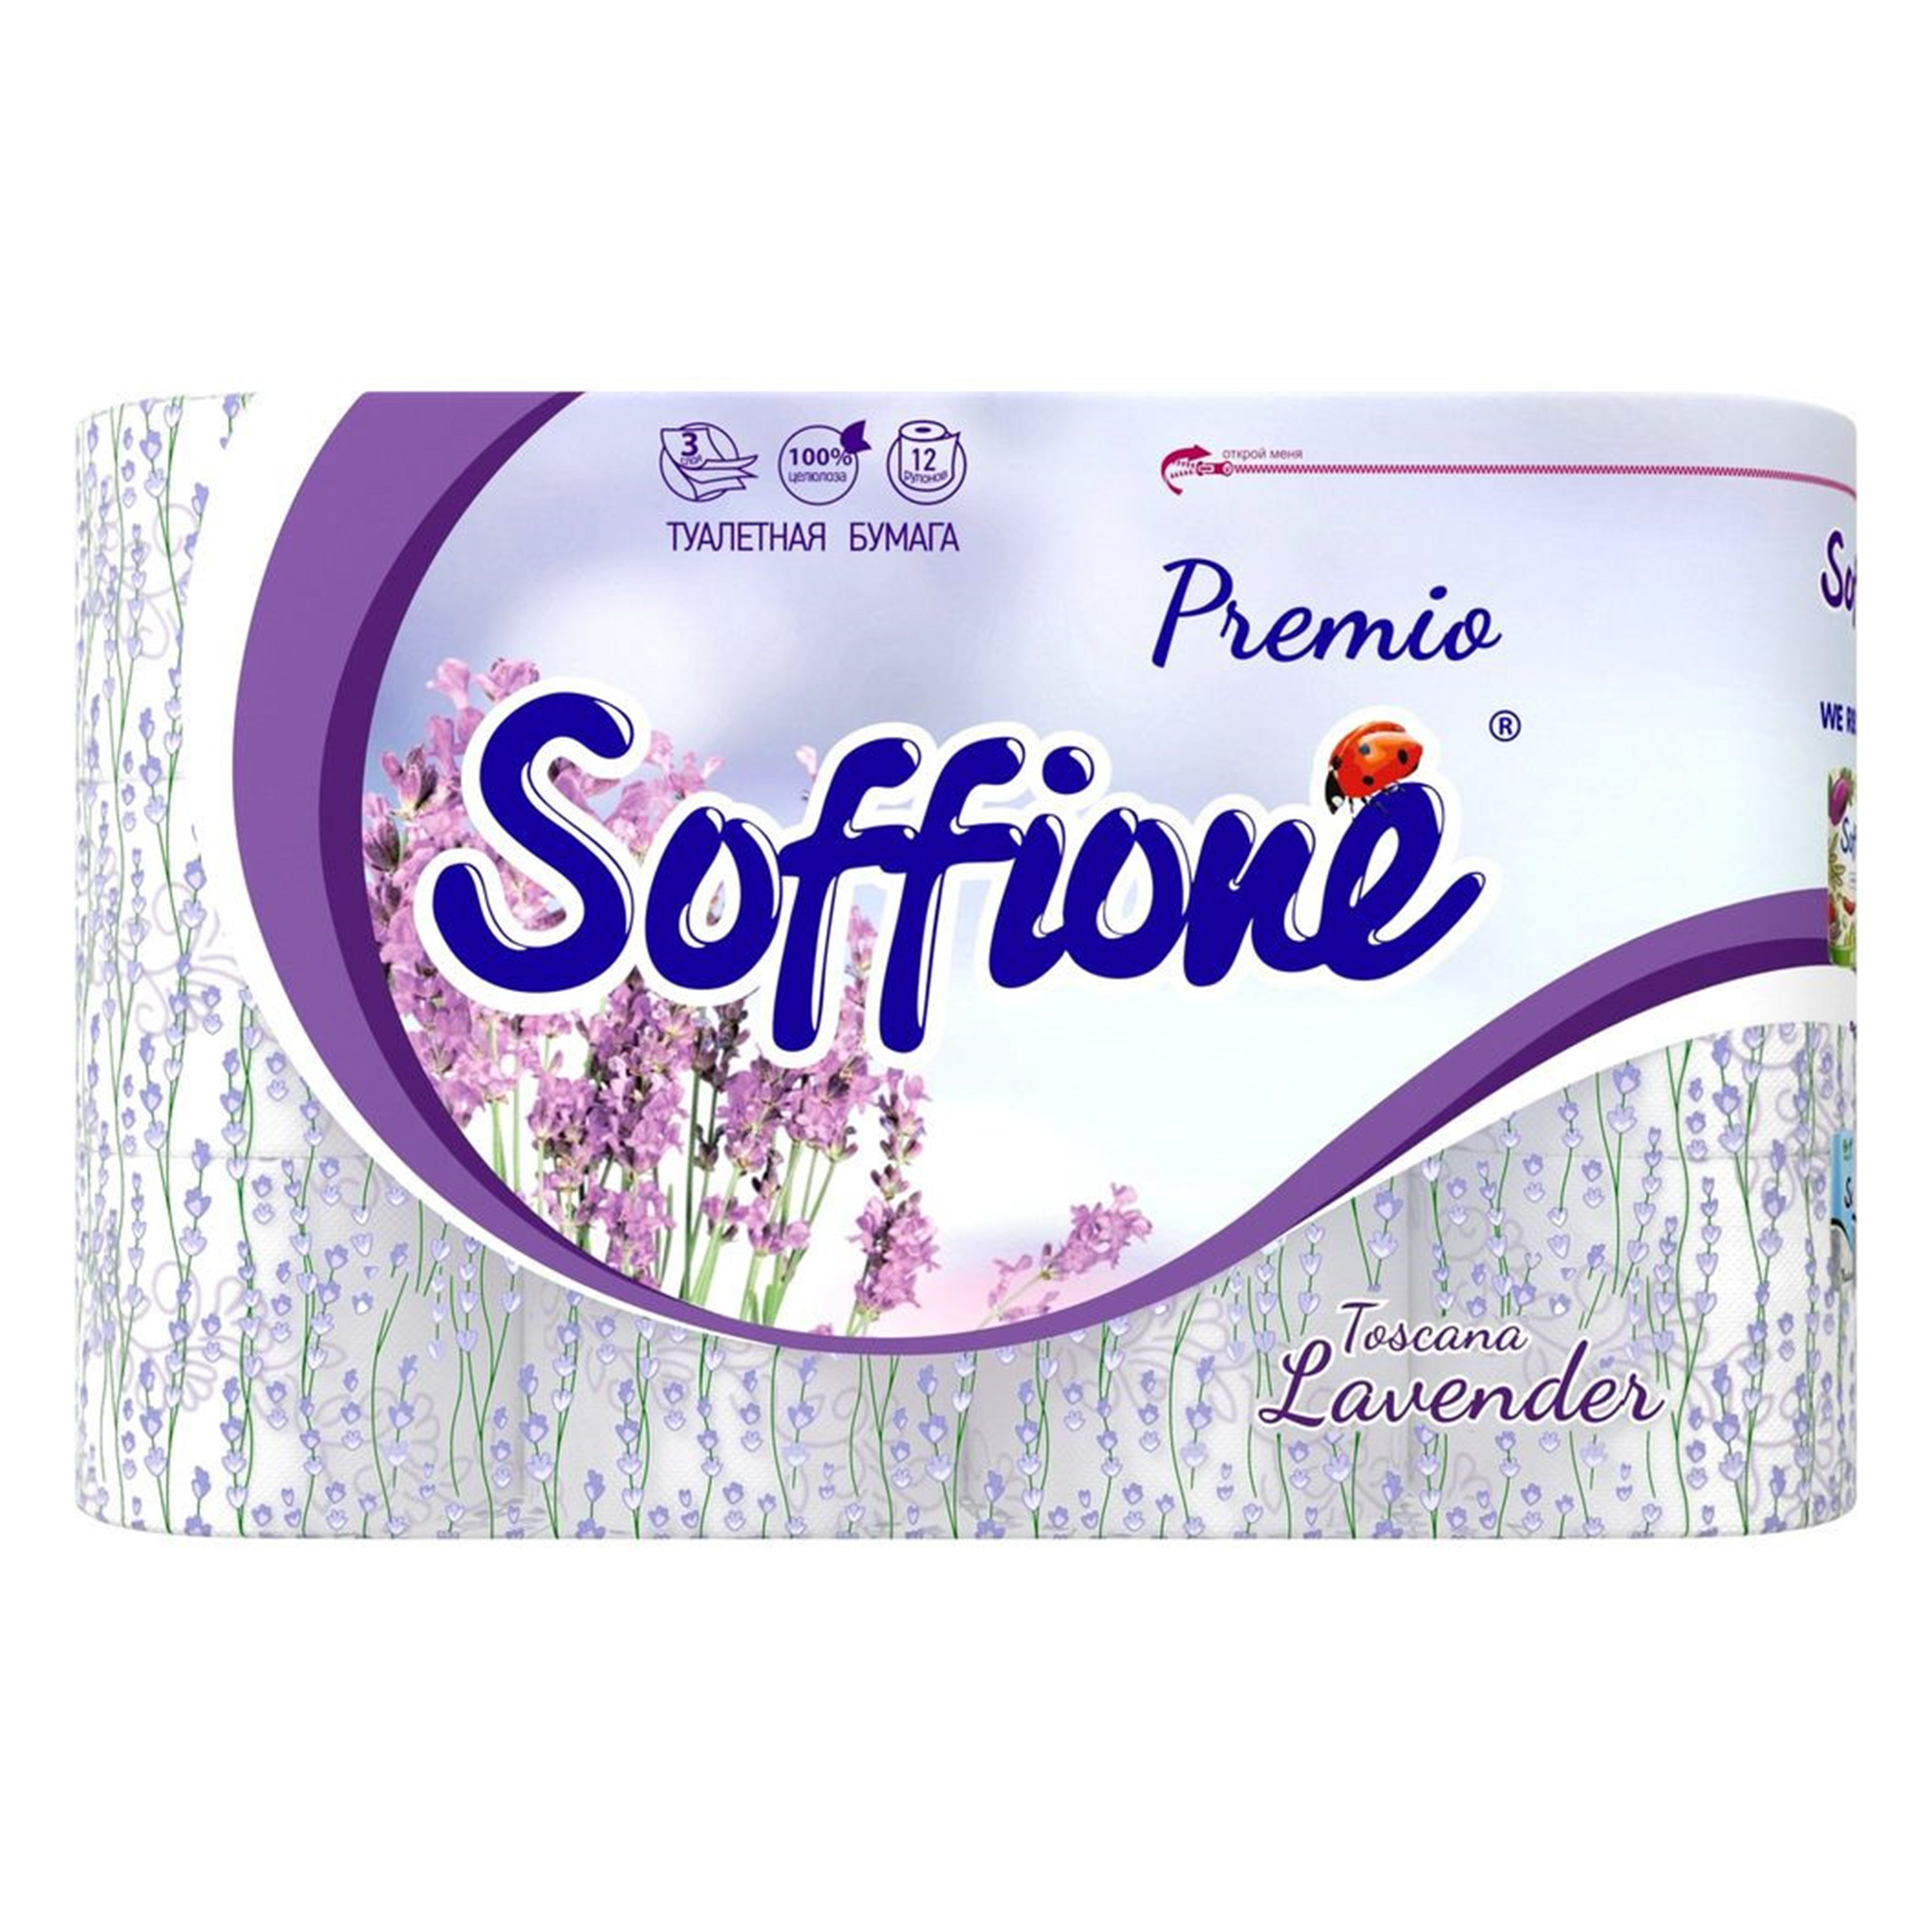 Туалетная бумага Soffione Premio Lavender 3 слоя 12 рулонов туалетная бумага zewa deluxe белая 3 слоя 12 рулонов